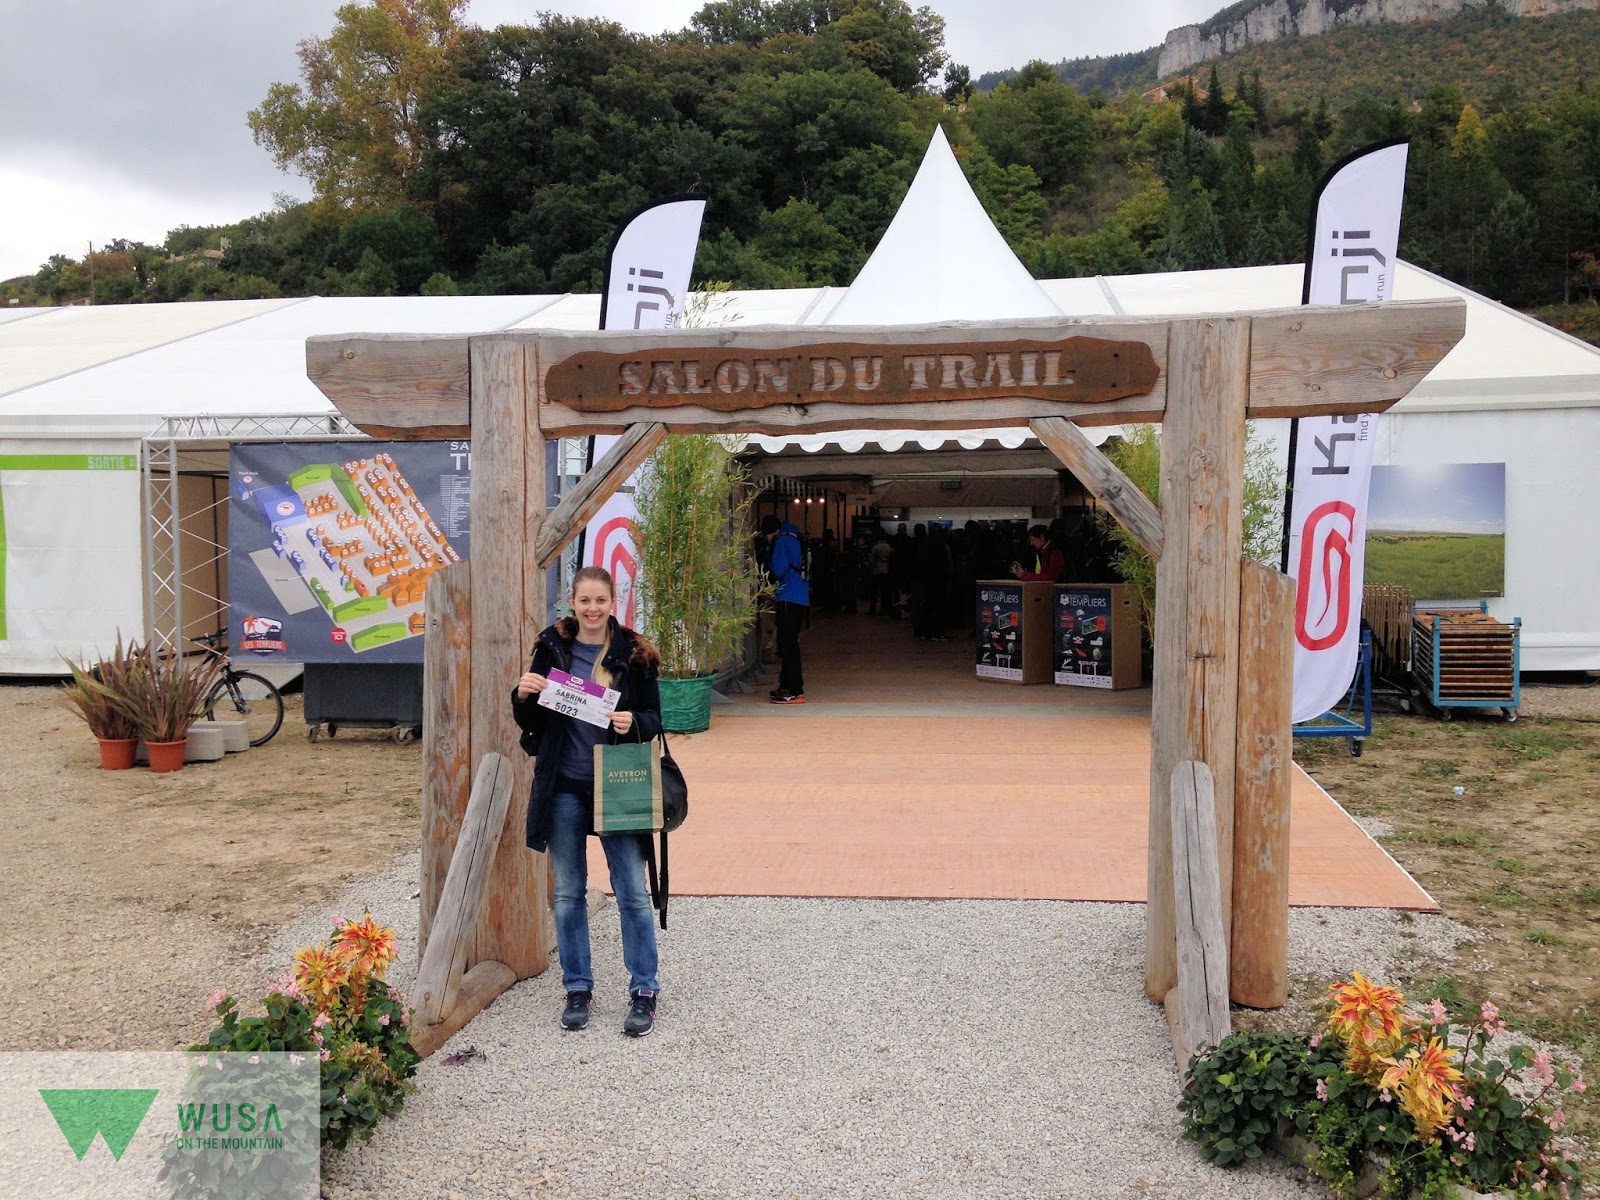 Festival des Templiers Teil 2 – Integrale des Causses-Ultra Trailrennen für Feinschmecker in Frankreich